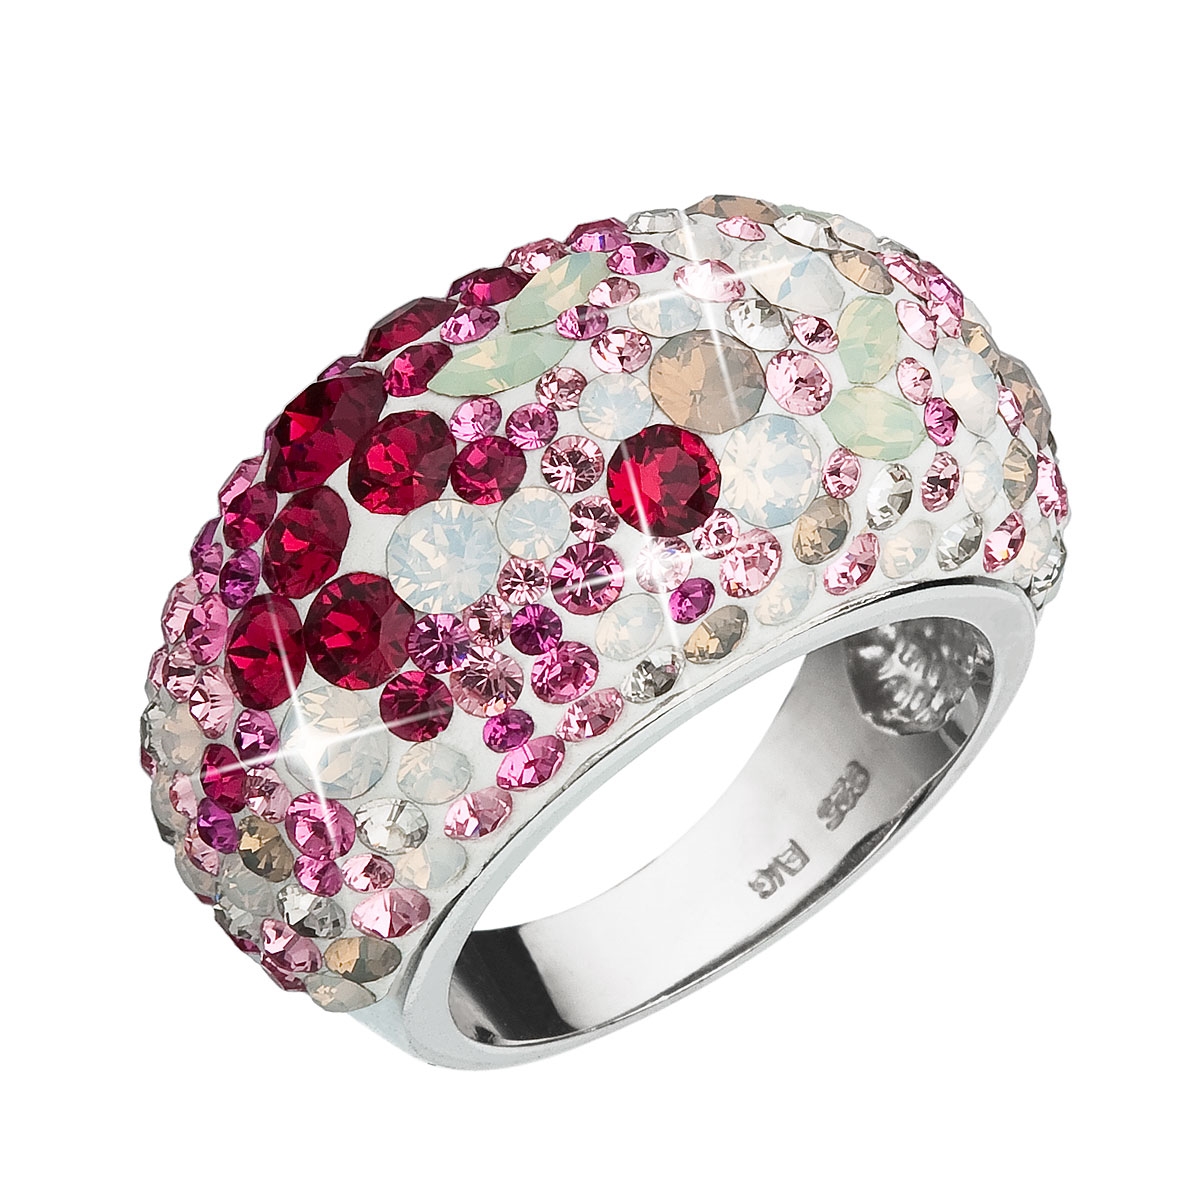 Strieborný prsteň s kryštálmi Crystals from Swarovski ®, Sweet Love